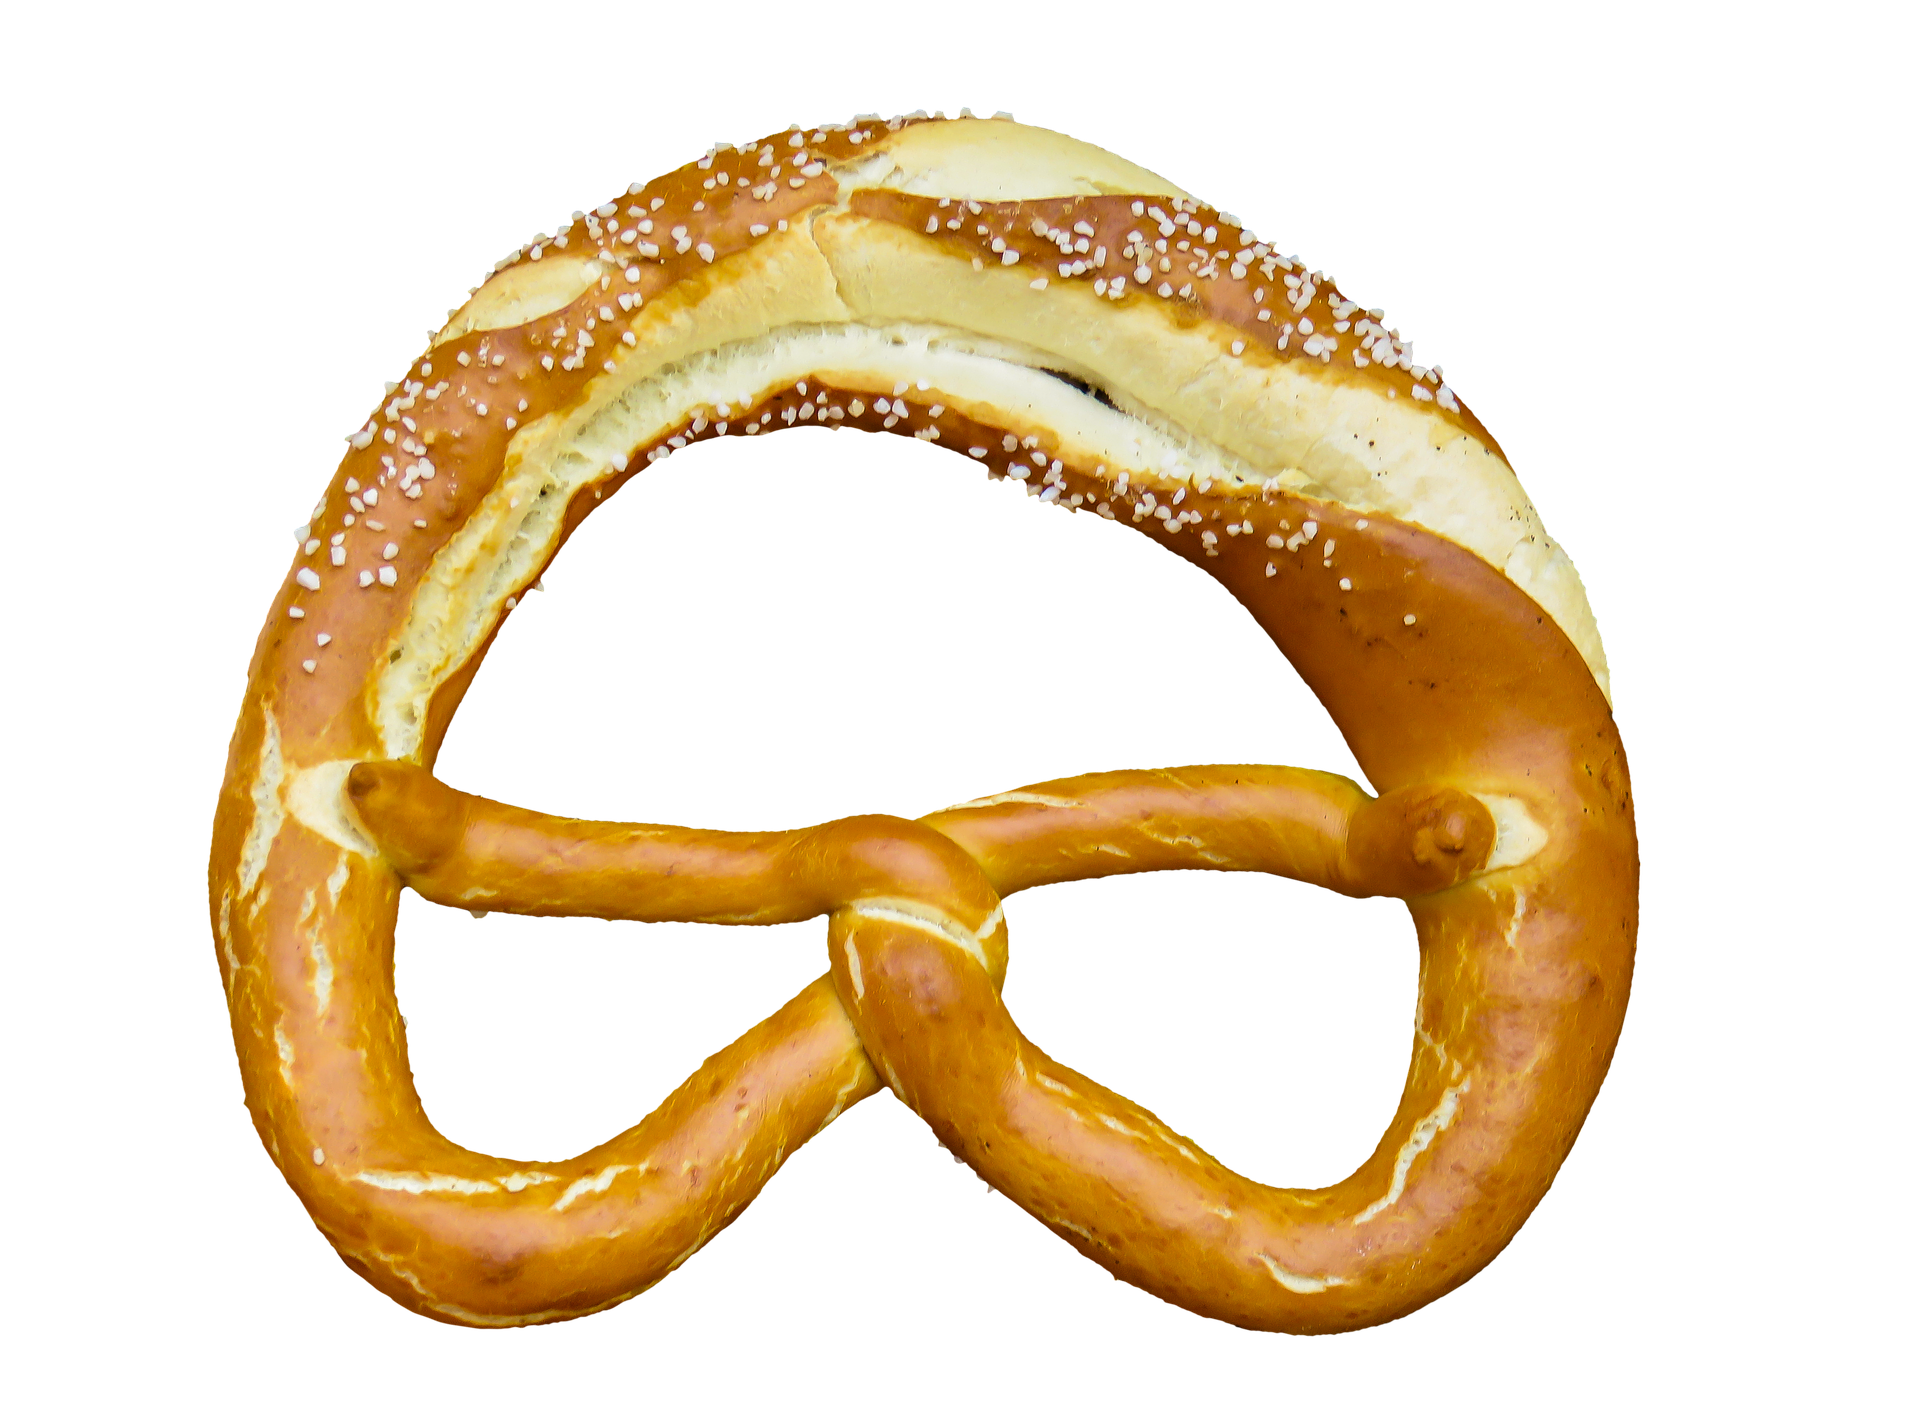 Baked pretzel photo